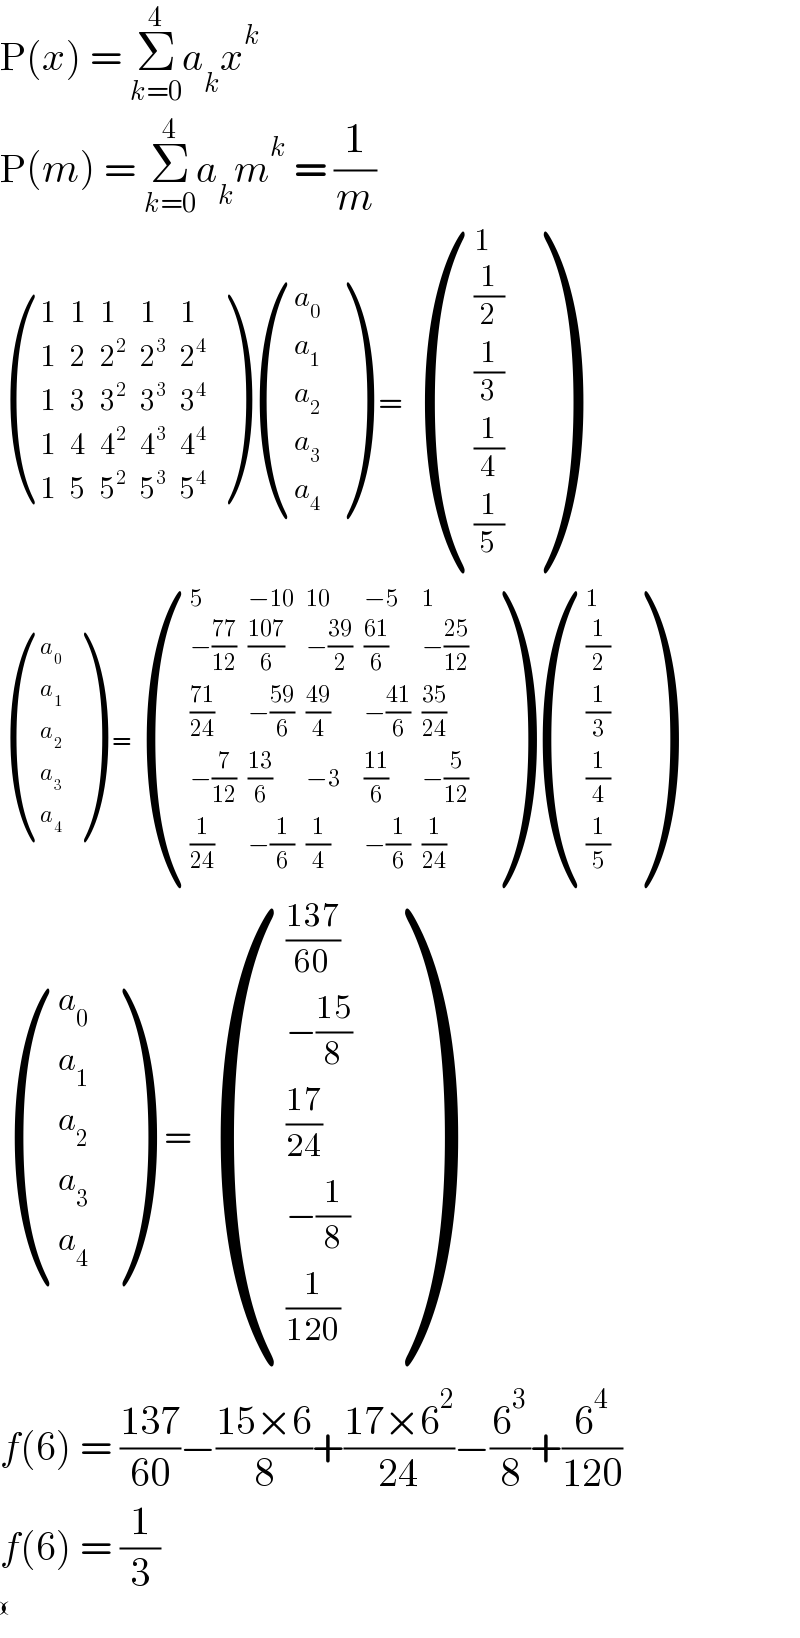 P(x) = Σ_(k=0) ^4 a_k x^k   P(m) = Σ_(k=0) ^4 a_k m^k  = (1/m)   ((1,1,1,1,1),(1,2,2^2 ,2^3 ,2^4 ),(1,3,3^2 ,3^3 ,3^4 ),(1,4,4^2 ,4^3 ,4^4 ),(1,5,5^2 ,5^3 ,5^4 ) ) ((a_0 ),(a_1 ),(a_2 ),(a_3 ),(a_4 ) )  =  ((1),((1/2)),((1/3)),((1/4)),((1/5)) )   ((a_0 ),(a_1 ),(a_2 ),(a_3 ),(a_4 ) )  = ((5,(−10),(10),(−5),1),((−((77)/(12))),((107)/6),(−((39)/2)),((61)/6),(−((25)/(12)))),(((71)/(24)),(−((59)/6)),((49)/4),(−((41)/6)),((35)/(24))),((−(7/(12))),((13)/6),(−3),((11)/6),(−(5/(12)))),((1/(24)),(−(1/6)),(1/4),(−(1/6)),(1/(24))) ) ((1),((1/2)),((1/3)),((1/4)),((1/5)) )     ((a_0 ),(a_1 ),(a_2 ),(a_3 ),(a_4 ) )   =  ((((137)/(60))),((−((15)/8))),(((17)/(24))),((−(1/8))),((1/(120))) )    f(6) = ((137)/(60))−((15×6)/8)+((17×6^2 )/(24))−(6^3 /8)+(6^4 /(120))  f(6) = (1/3)   ((),() )  